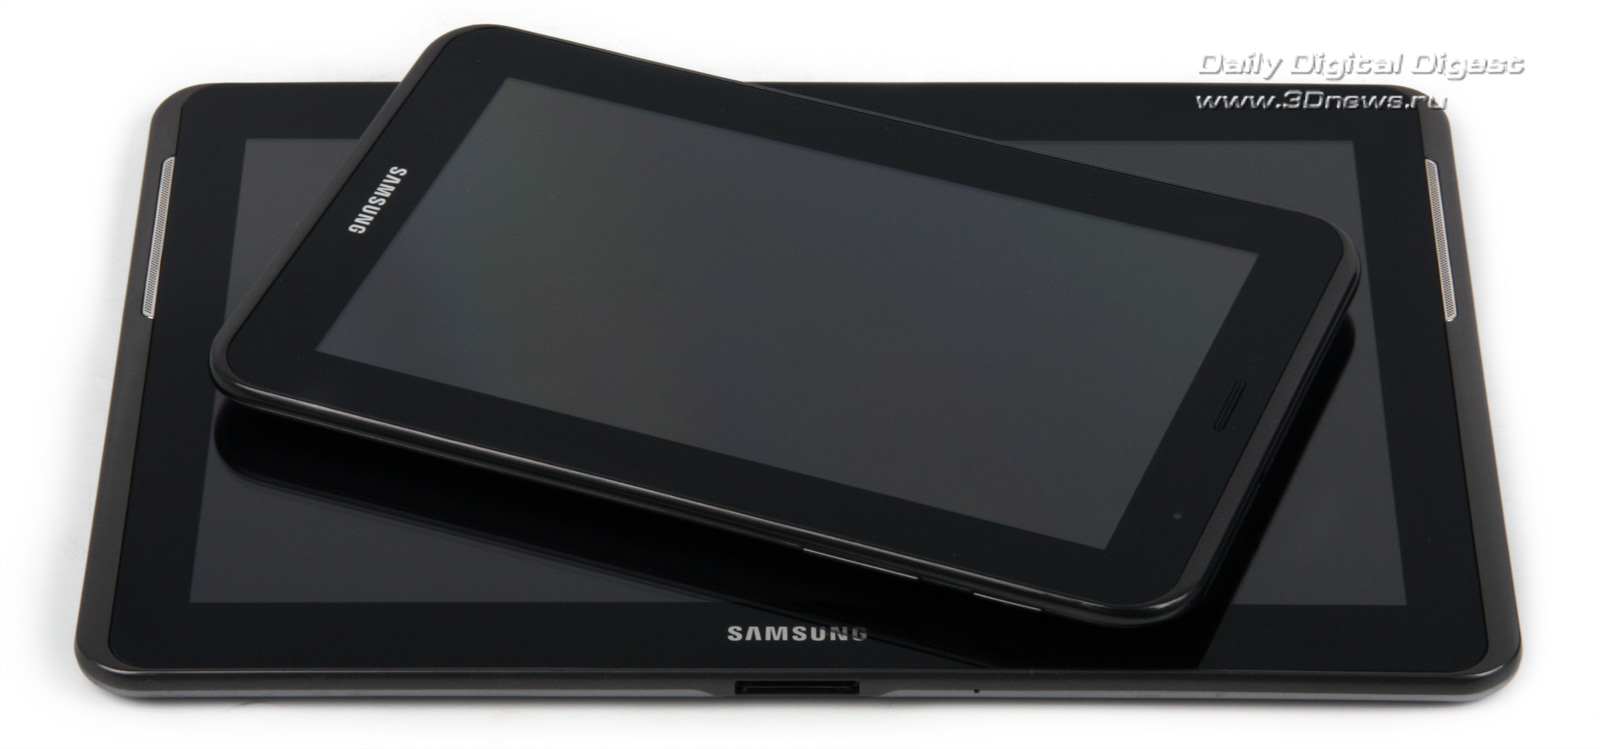 Ремонт планшета Samsung Galaxy Tab 2 P в Москве по низкой цене | Mobilap Repair